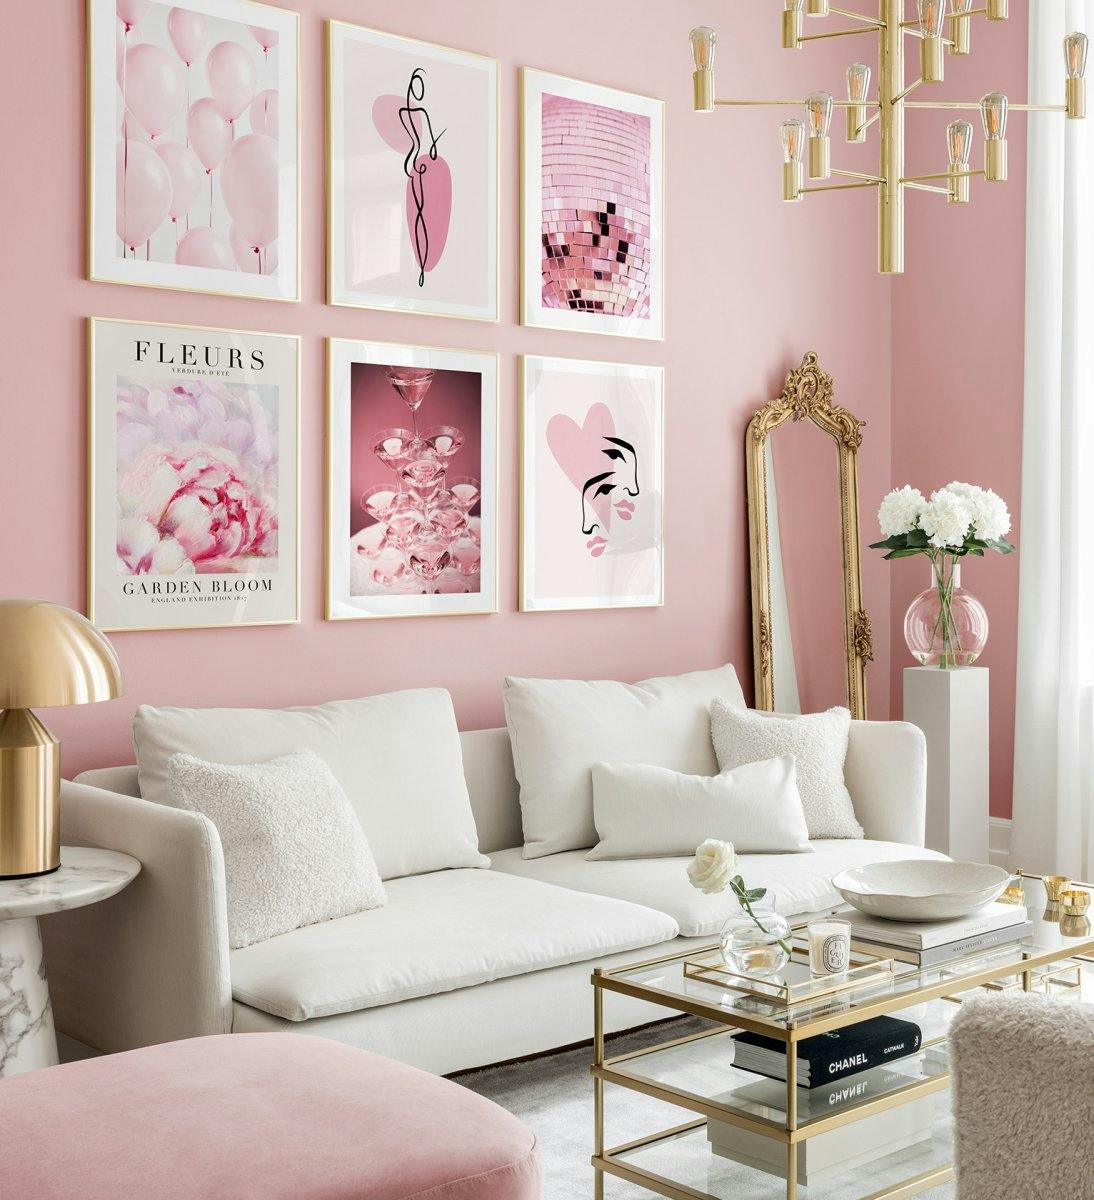 Pared de galería rosa y romántica de ilustraciones y fotografías con marcos dorados para el salón